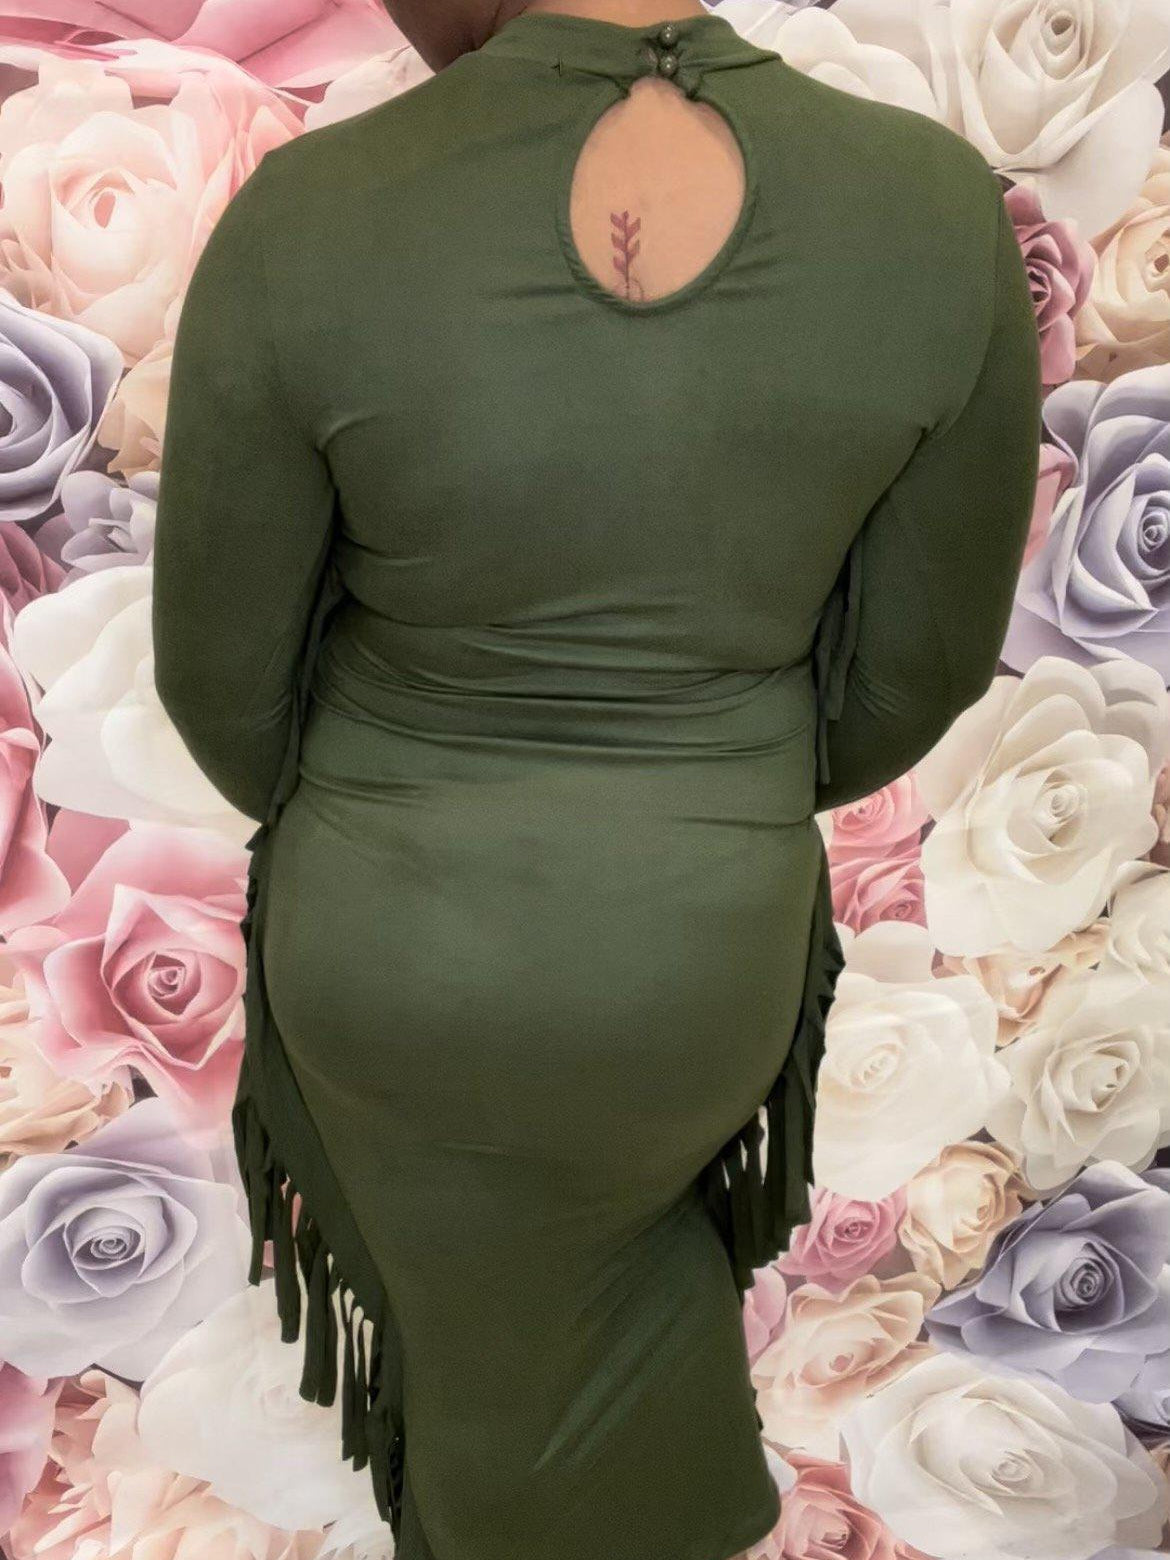 Fringe Maxi Dress-Medium-Olive-Abundance Junky Stylish Clothing Boutique for Women